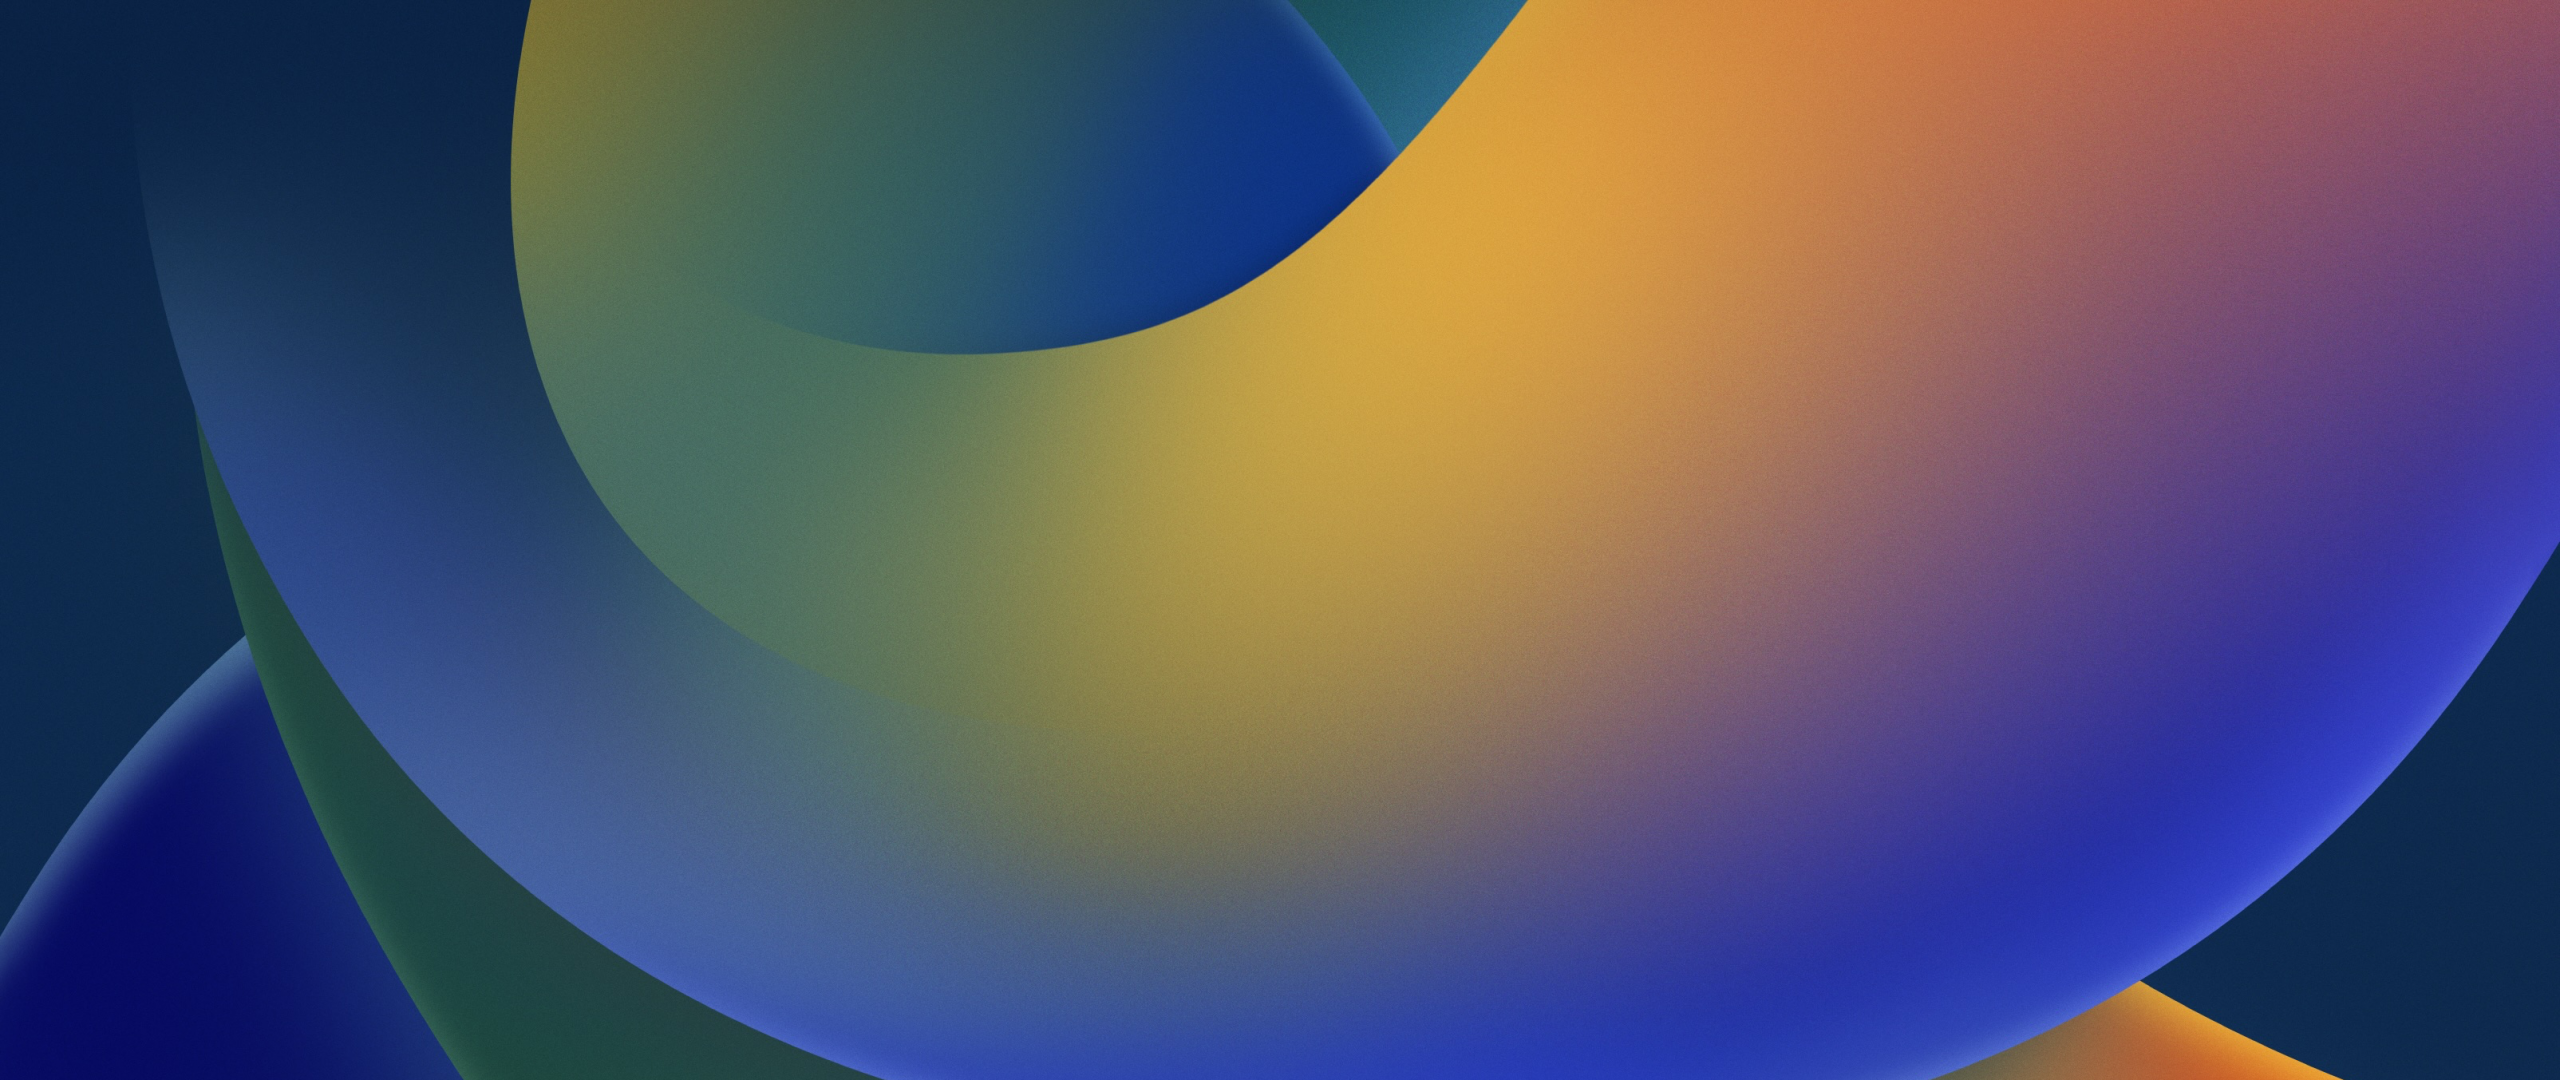 Tải xuống hình nền iOS 16 Wallpaper 4K với độ phân giải tuyệt vời. Với màu sắc sống động, đường nét chính xác cùng với phong cách độc đáo, các hình nền iOS 16 Wallpaper 4K sẽ làm cho chiếc điện thoại của bạn trở nên nổi bật và thể hiện đẳng cấp của bạn.